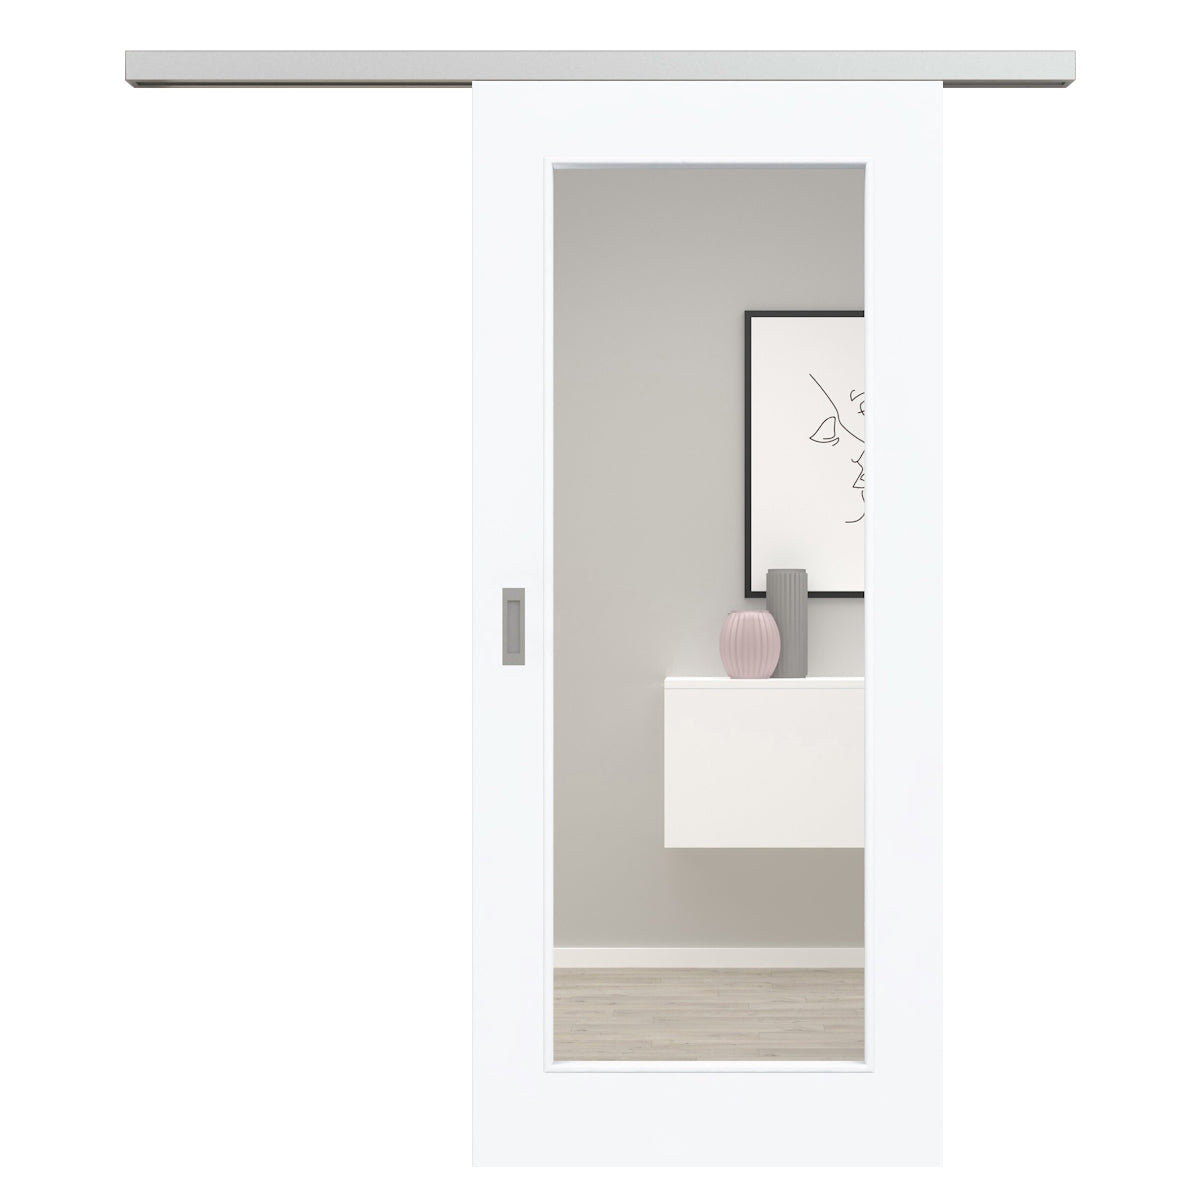 Schiebetür für Set mit Edelstahllaufkasten brillant-weiß Stiltür mit 1 Kassette und Lichtausschnitt - Modell Stiltür M13LA